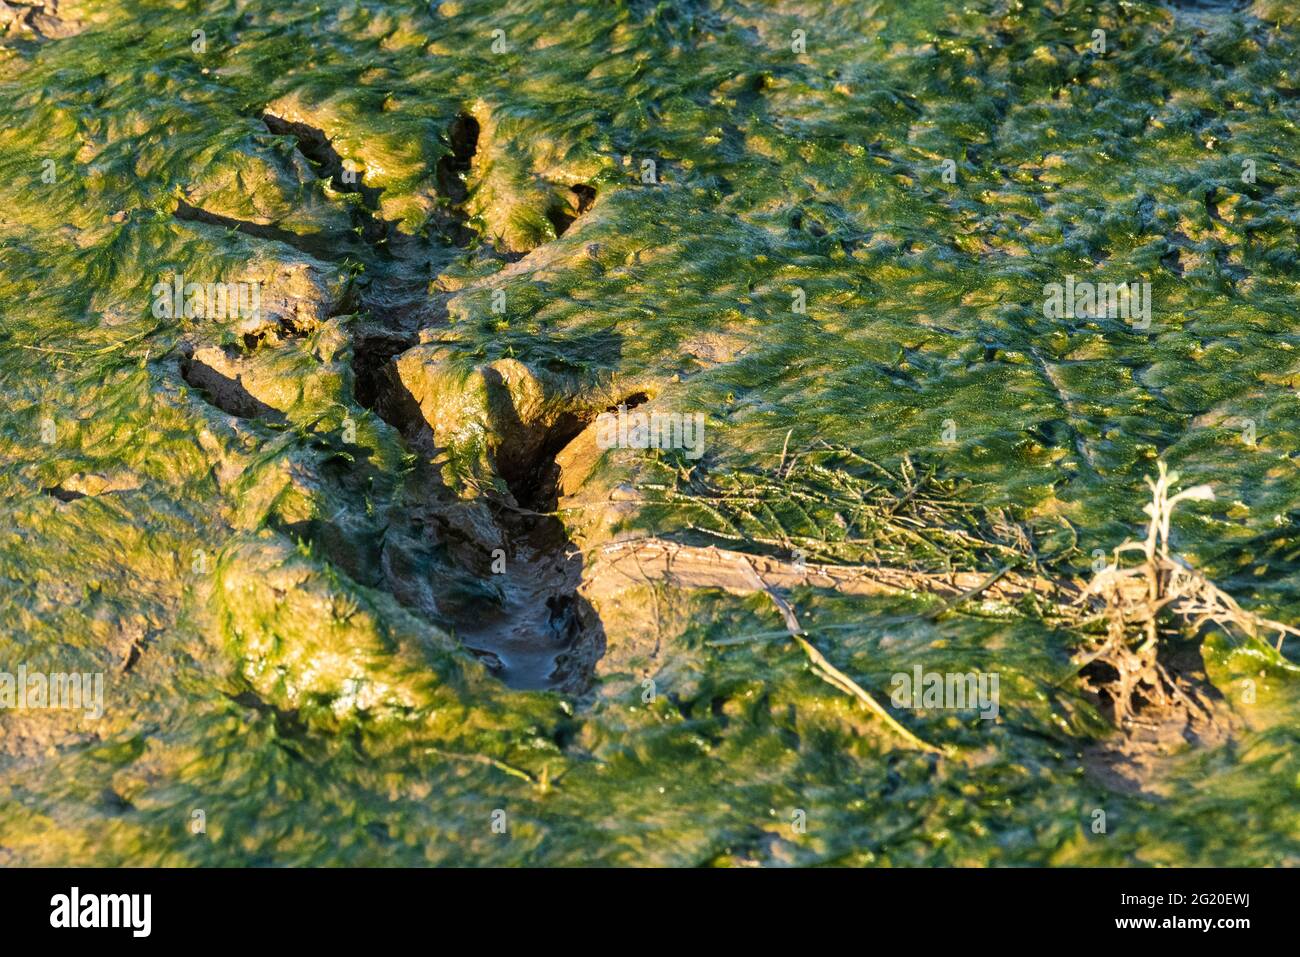 Primer plano de las pistas dejadas por un caimán caminando a través de barro fresco en el Parque Estatal Meaher cerca de Mobile, Alabama, el 10 de mayo de 2021. Foto de stock